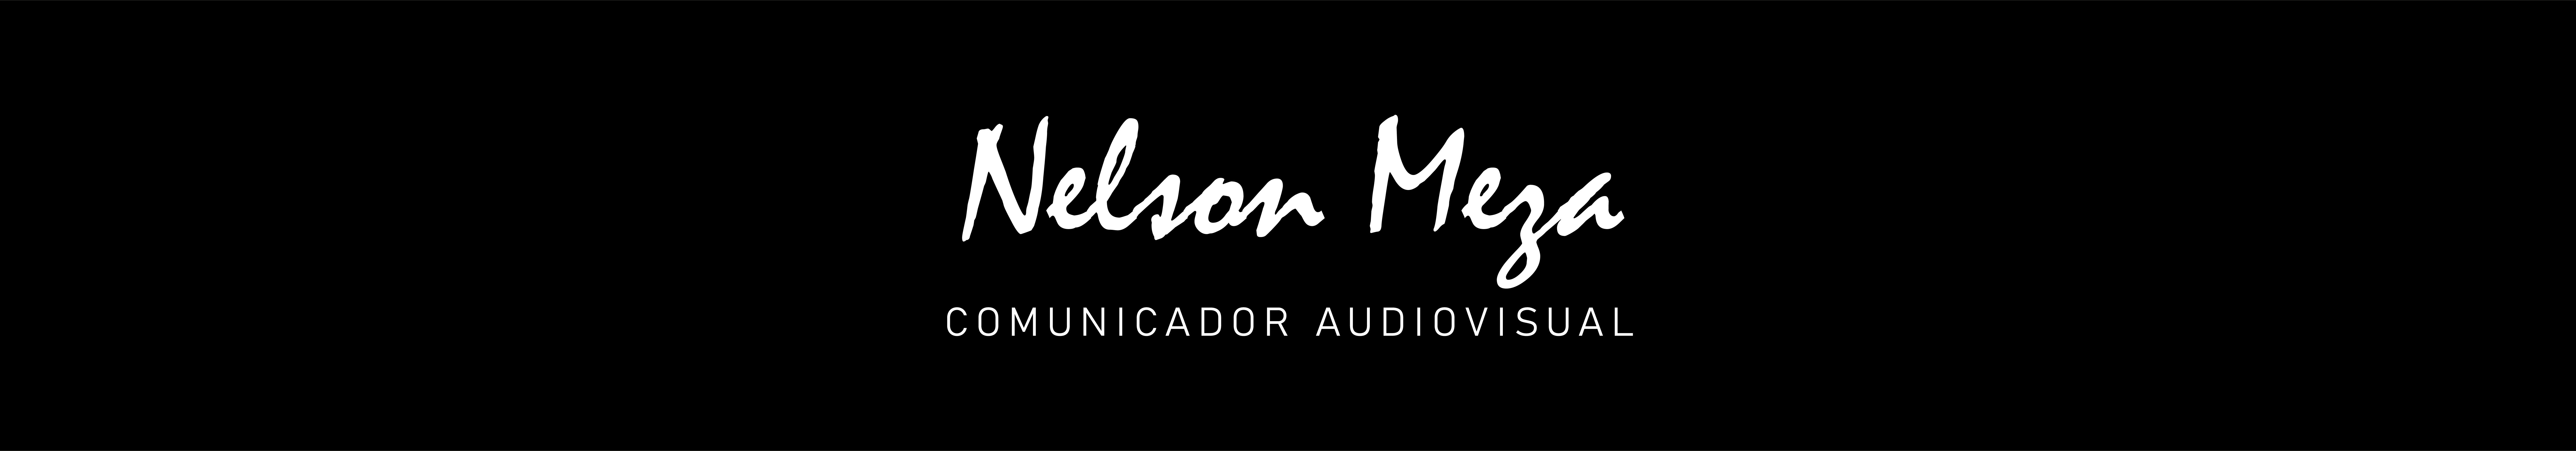 Nelson Meza's profile banner